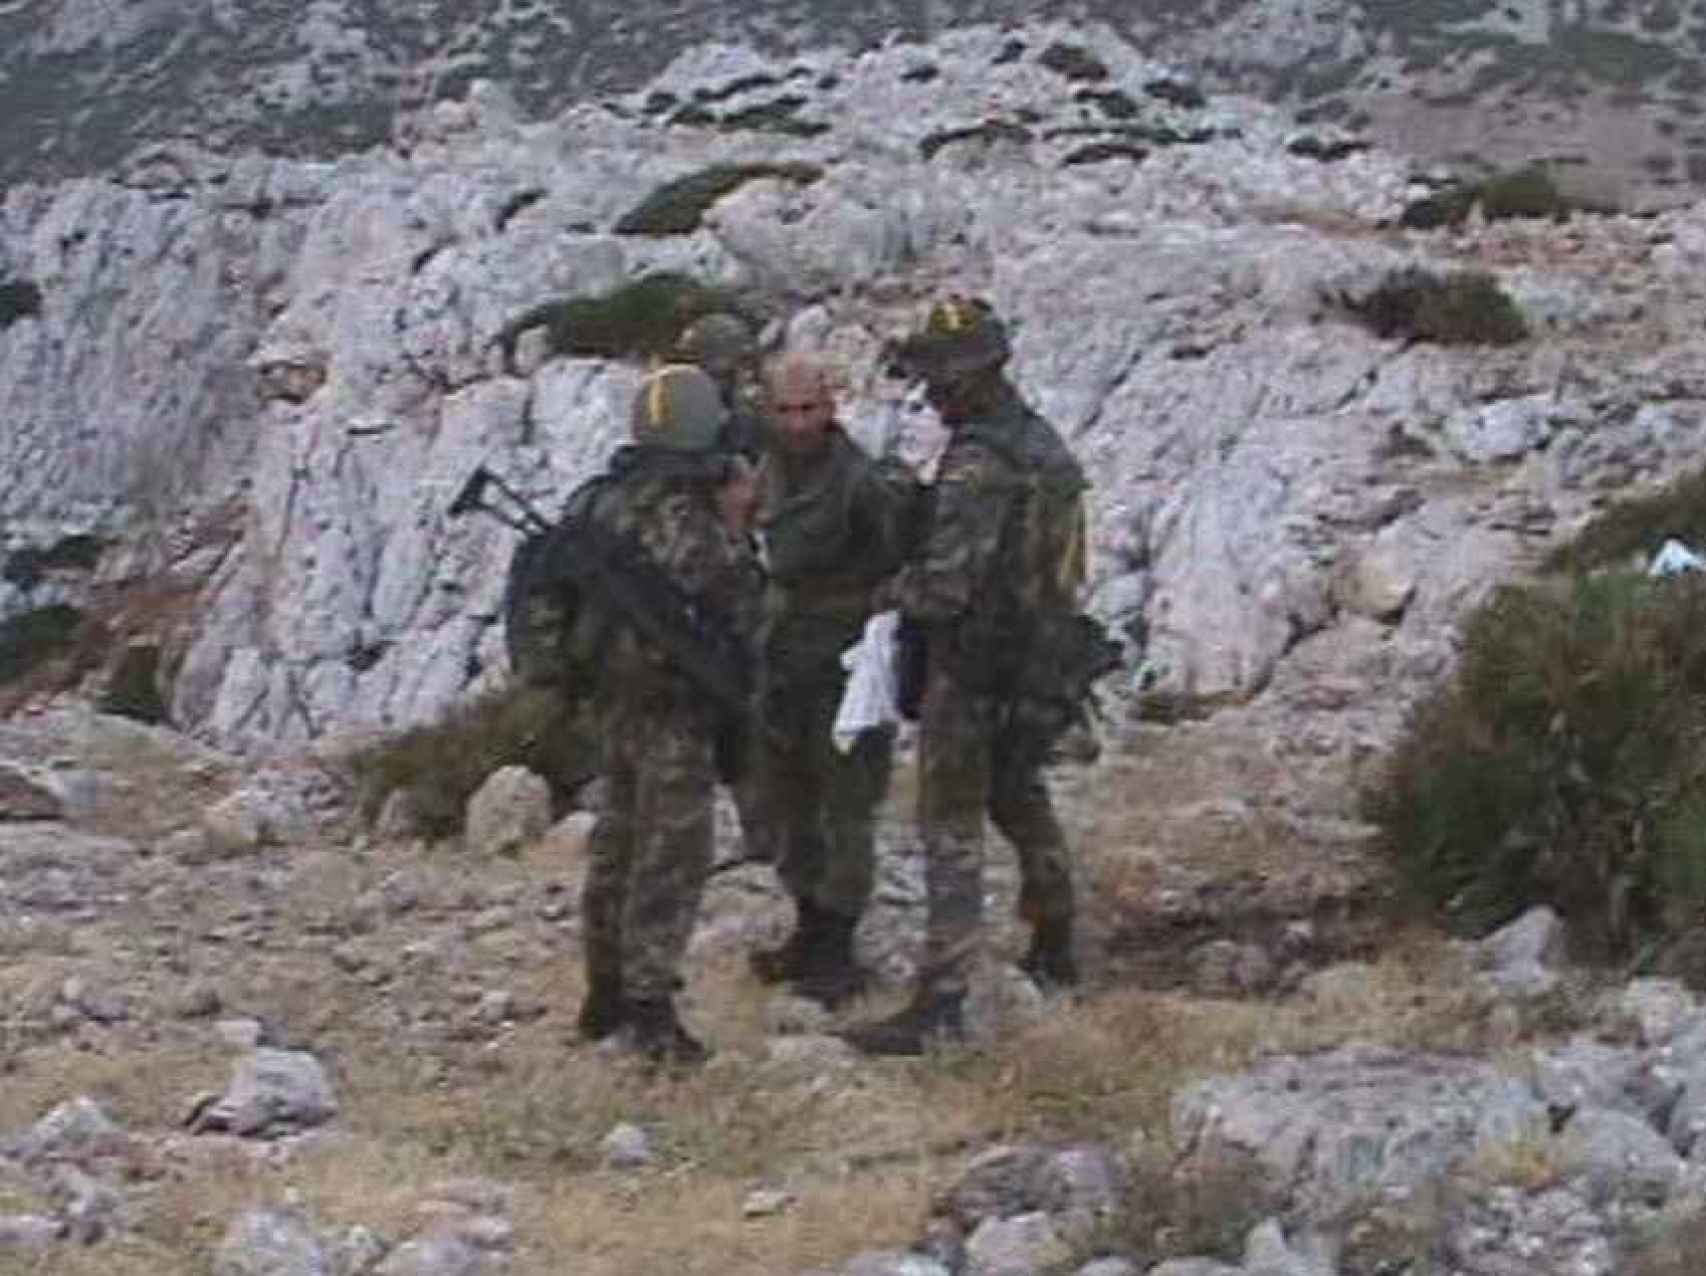 Un momento de la recuperación del islote por soldados españoles, que capturaron, sin causar bajas, a los gendarmes marroquíes el 17 de julio de 2002.